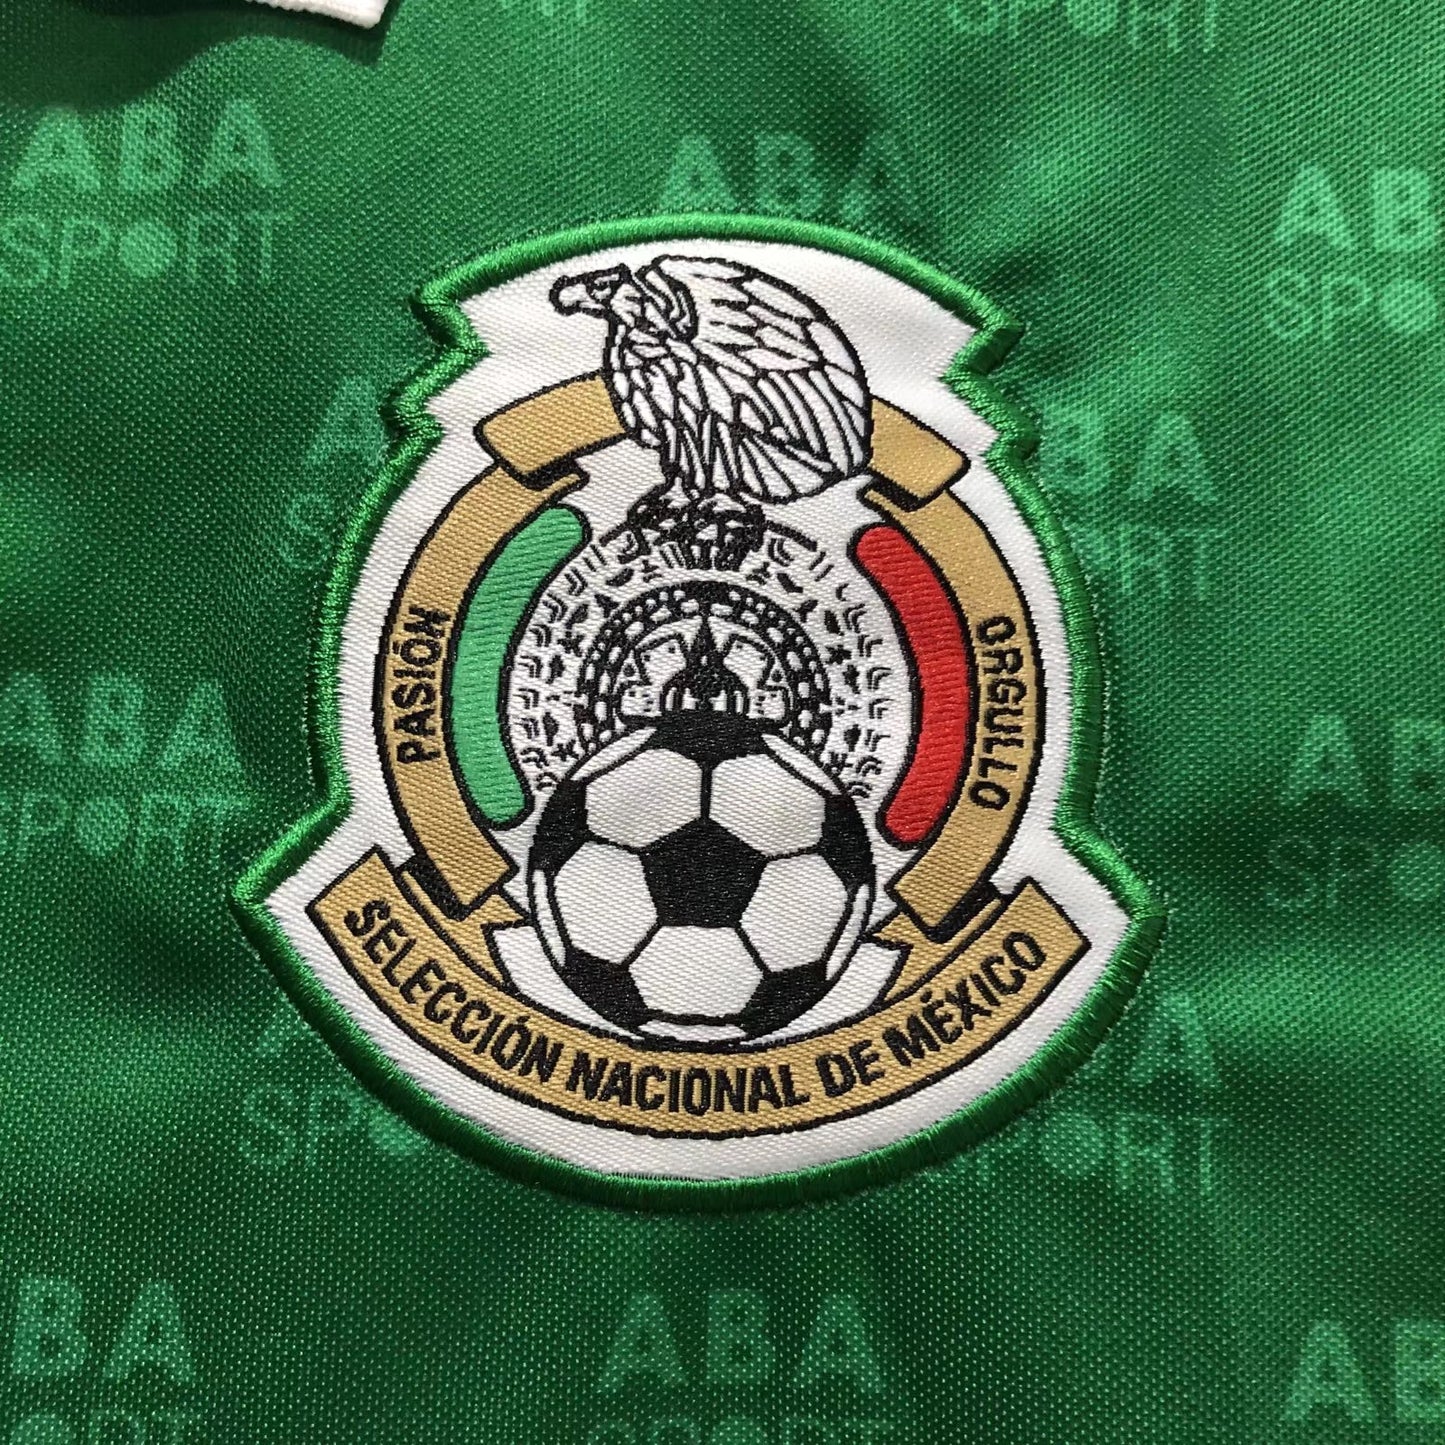 Mexico 1995 Home Shirt